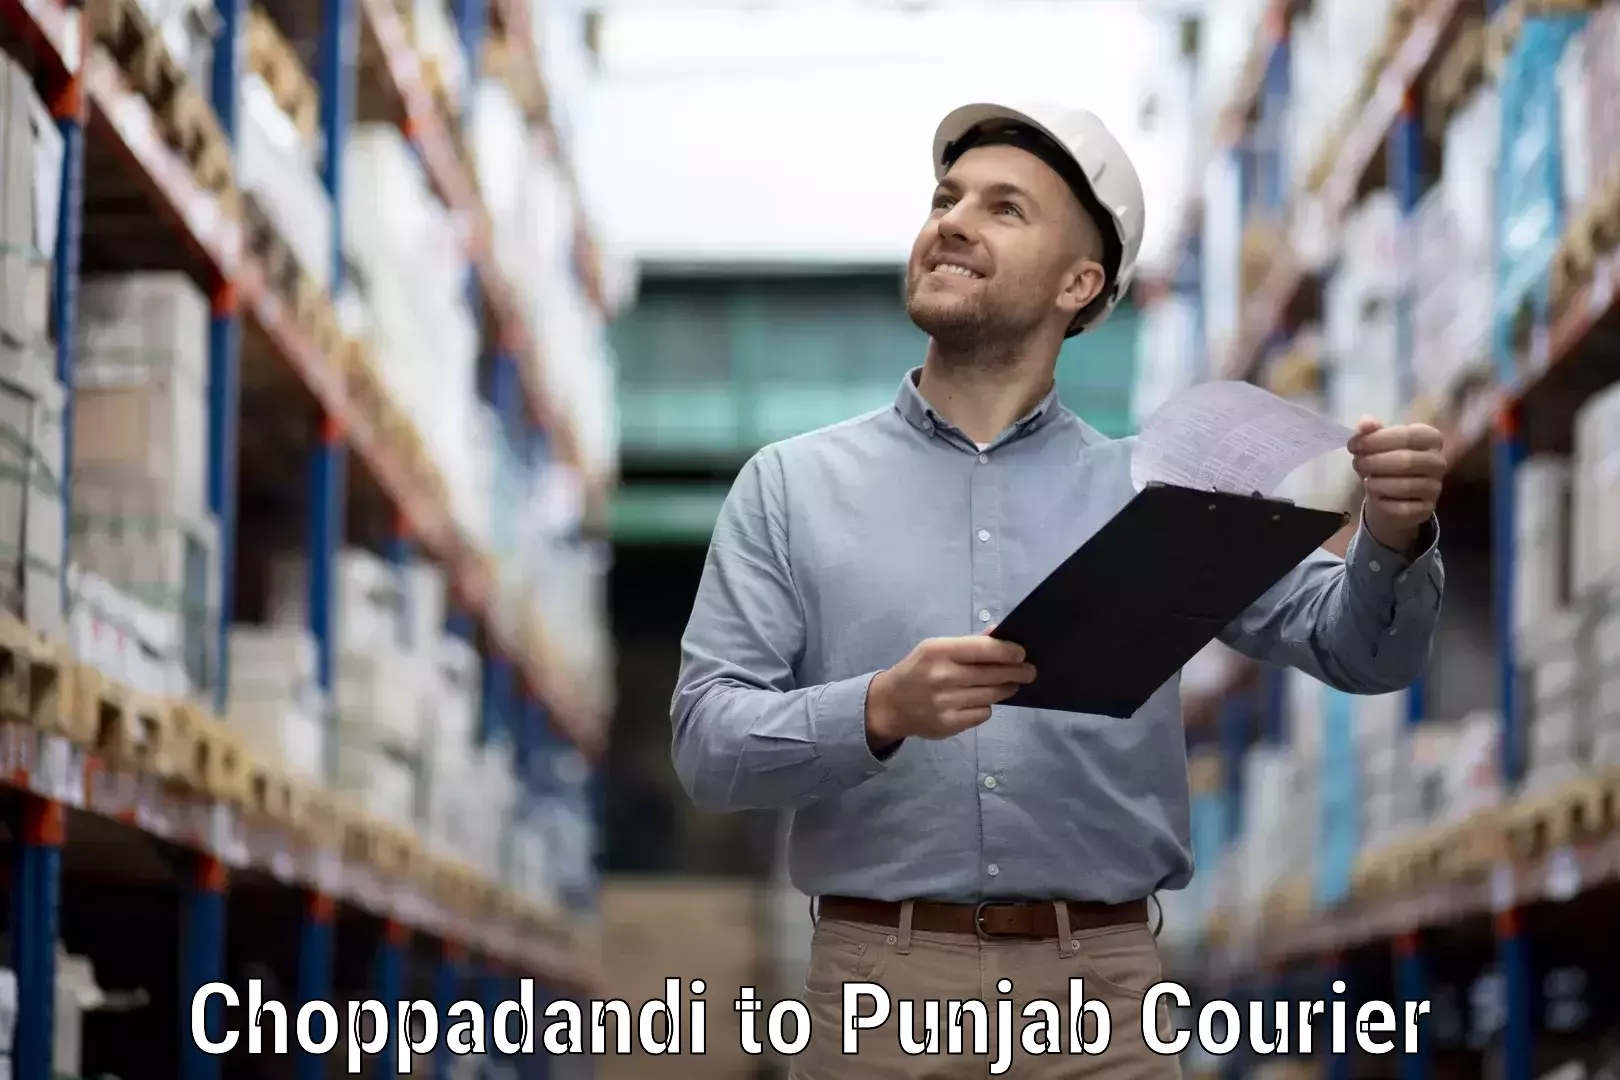 Customer-focused courier Choppadandi to Raikot